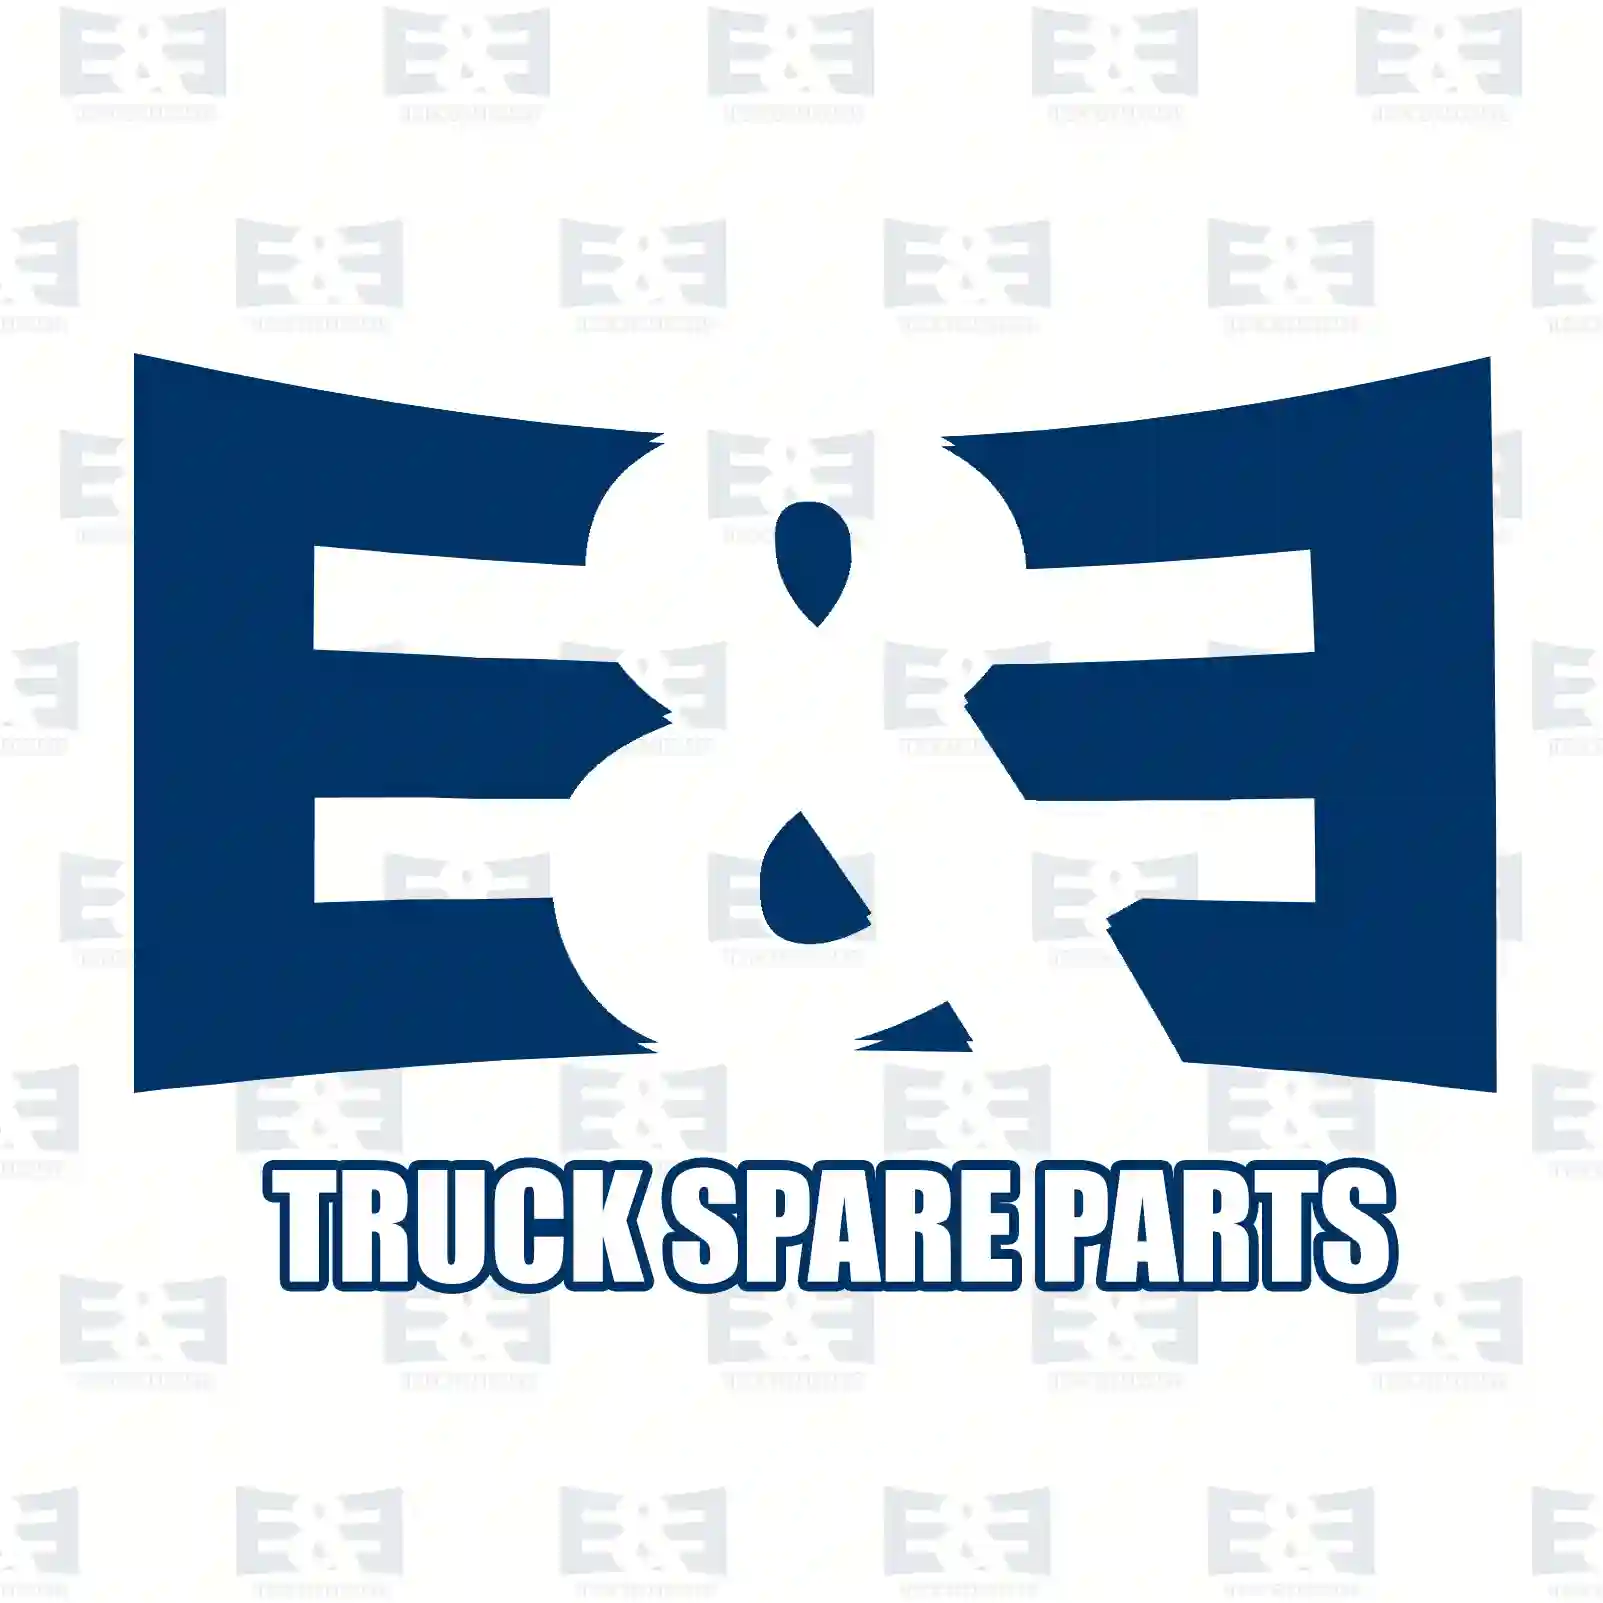 Air tank, 2E2293330, 1524512, 1935520, 730182, , ||  2E2293330 E&E Truck Spare Parts | Truck Spare Parts, Auotomotive Spare Parts Air tank, 2E2293330, 1524512, 1935520, 730182, , ||  2E2293330 E&E Truck Spare Parts | Truck Spare Parts, Auotomotive Spare Parts